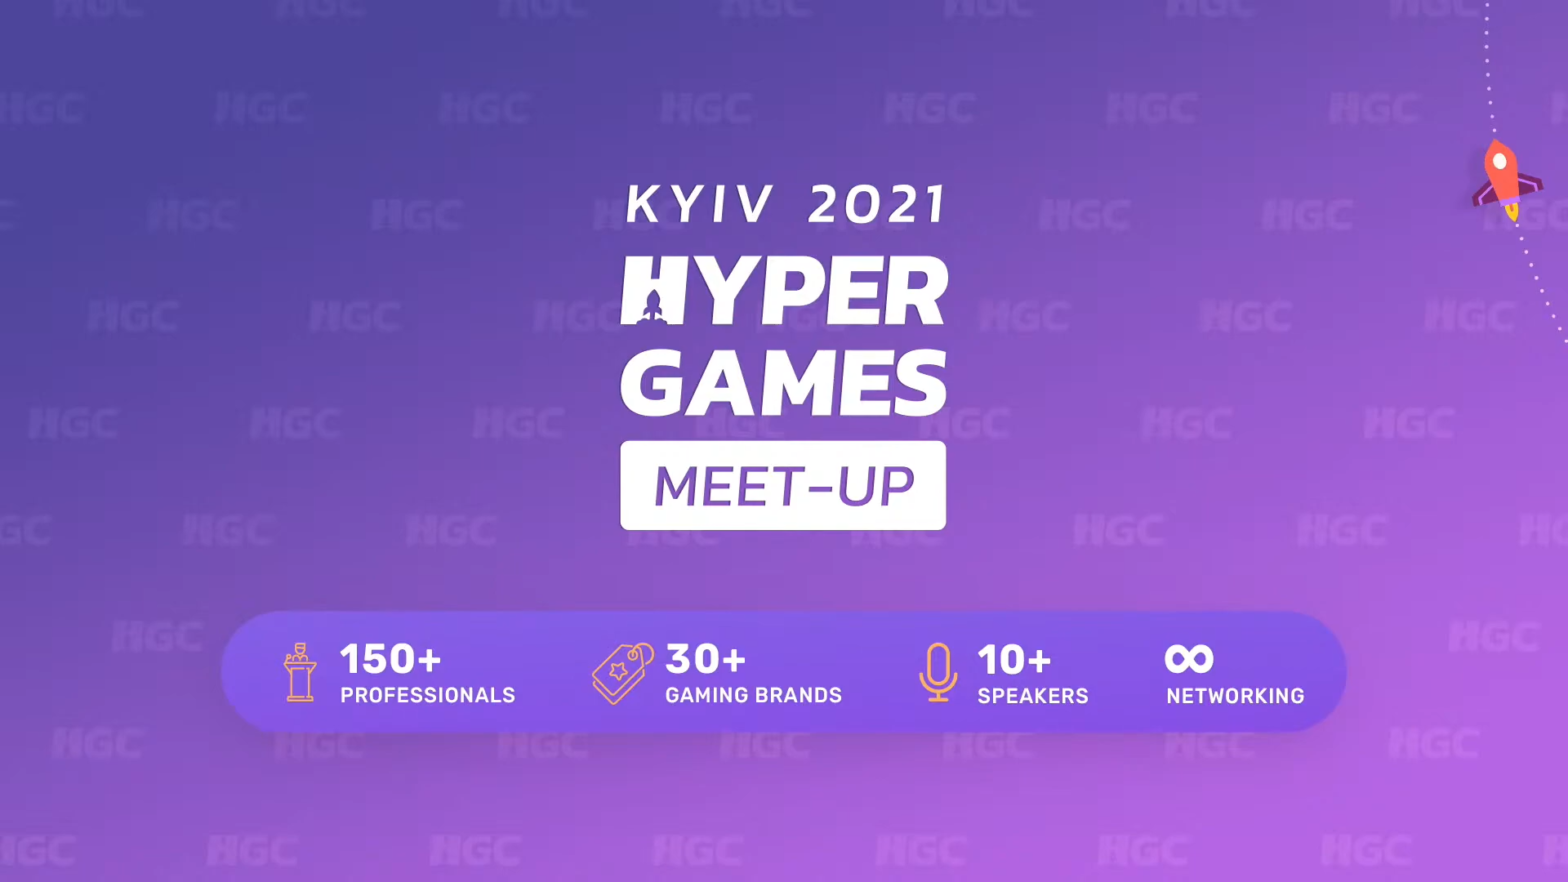  Hyper Games Meet-Up Kyiv 2021